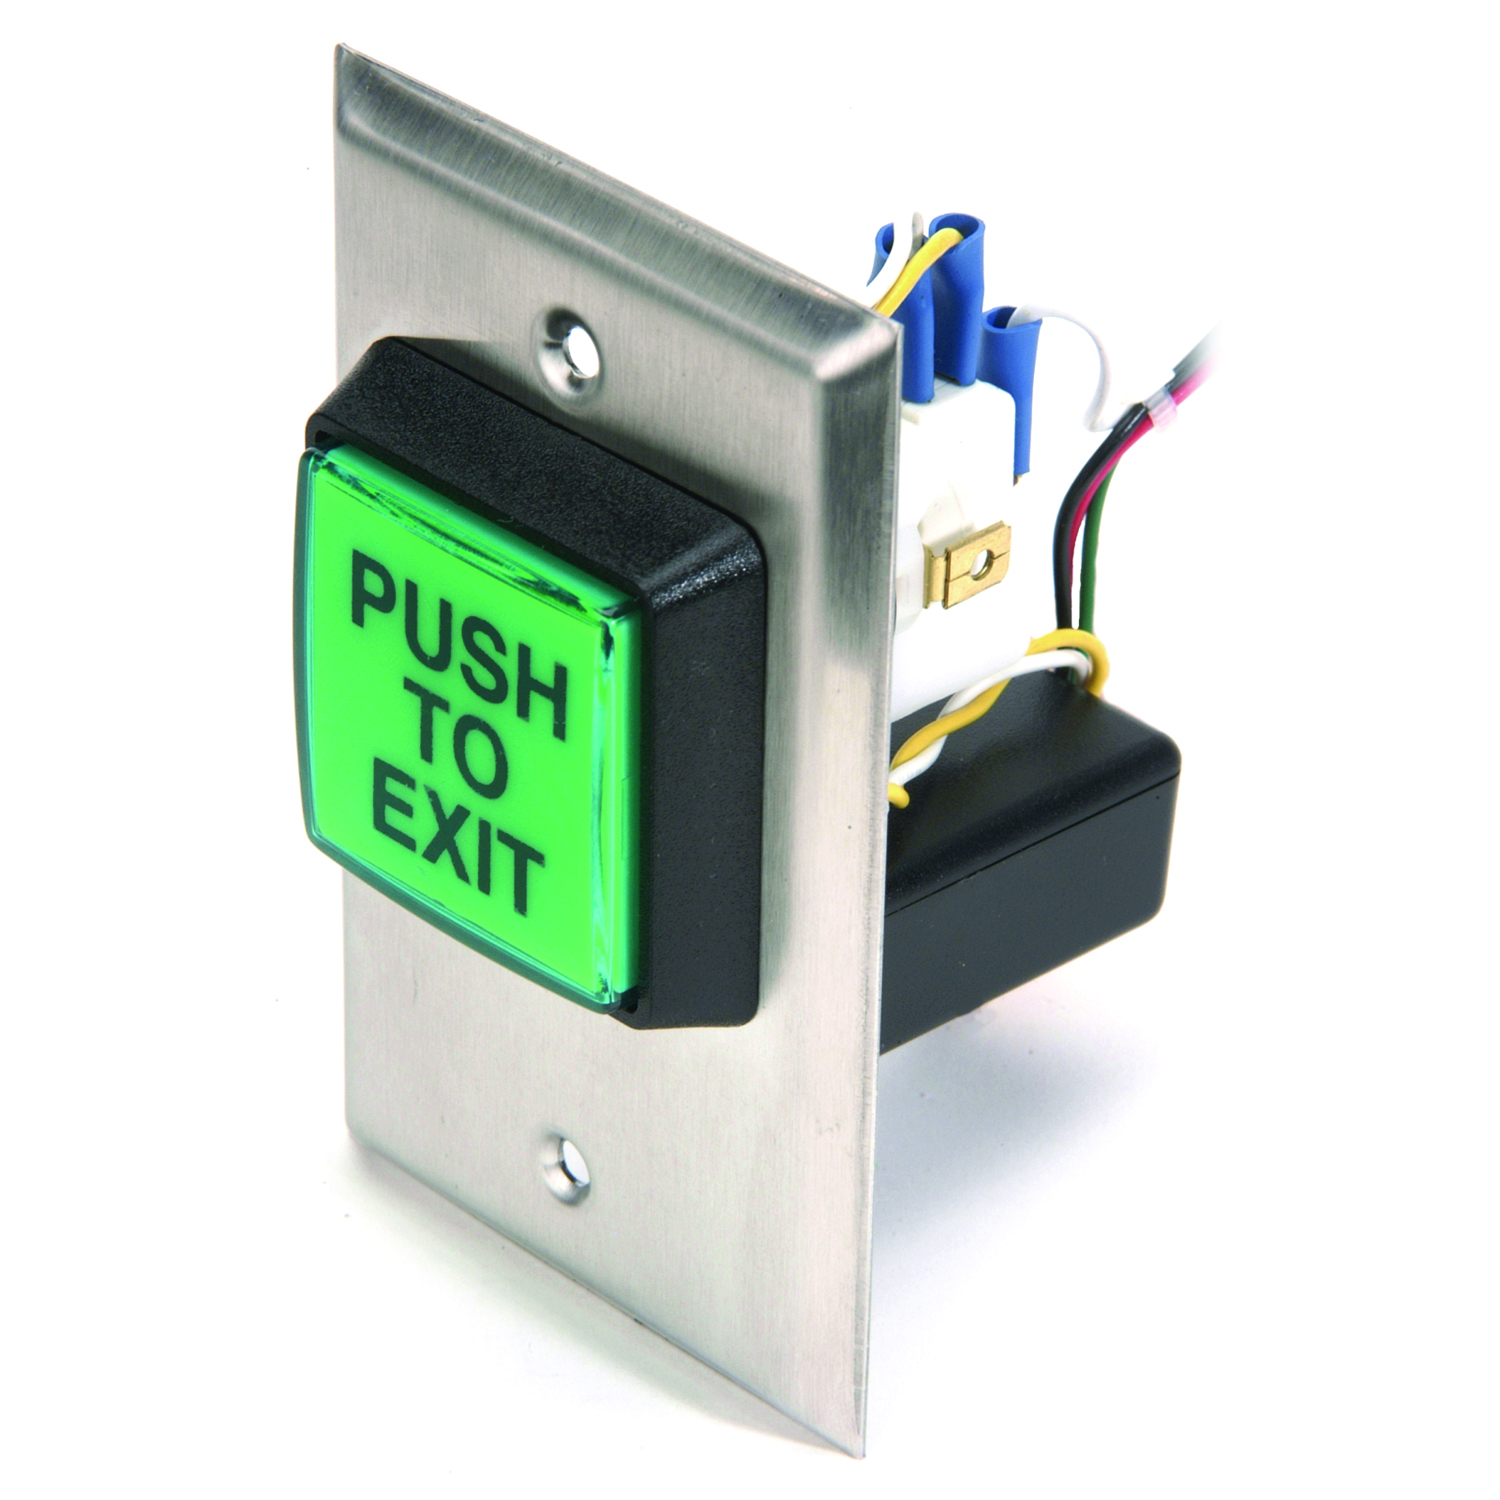 CI-1KX Series: Interruptores de llave para uso exterior industrial - Llave e interruptores para portones - Controles de puertas y portones industriales